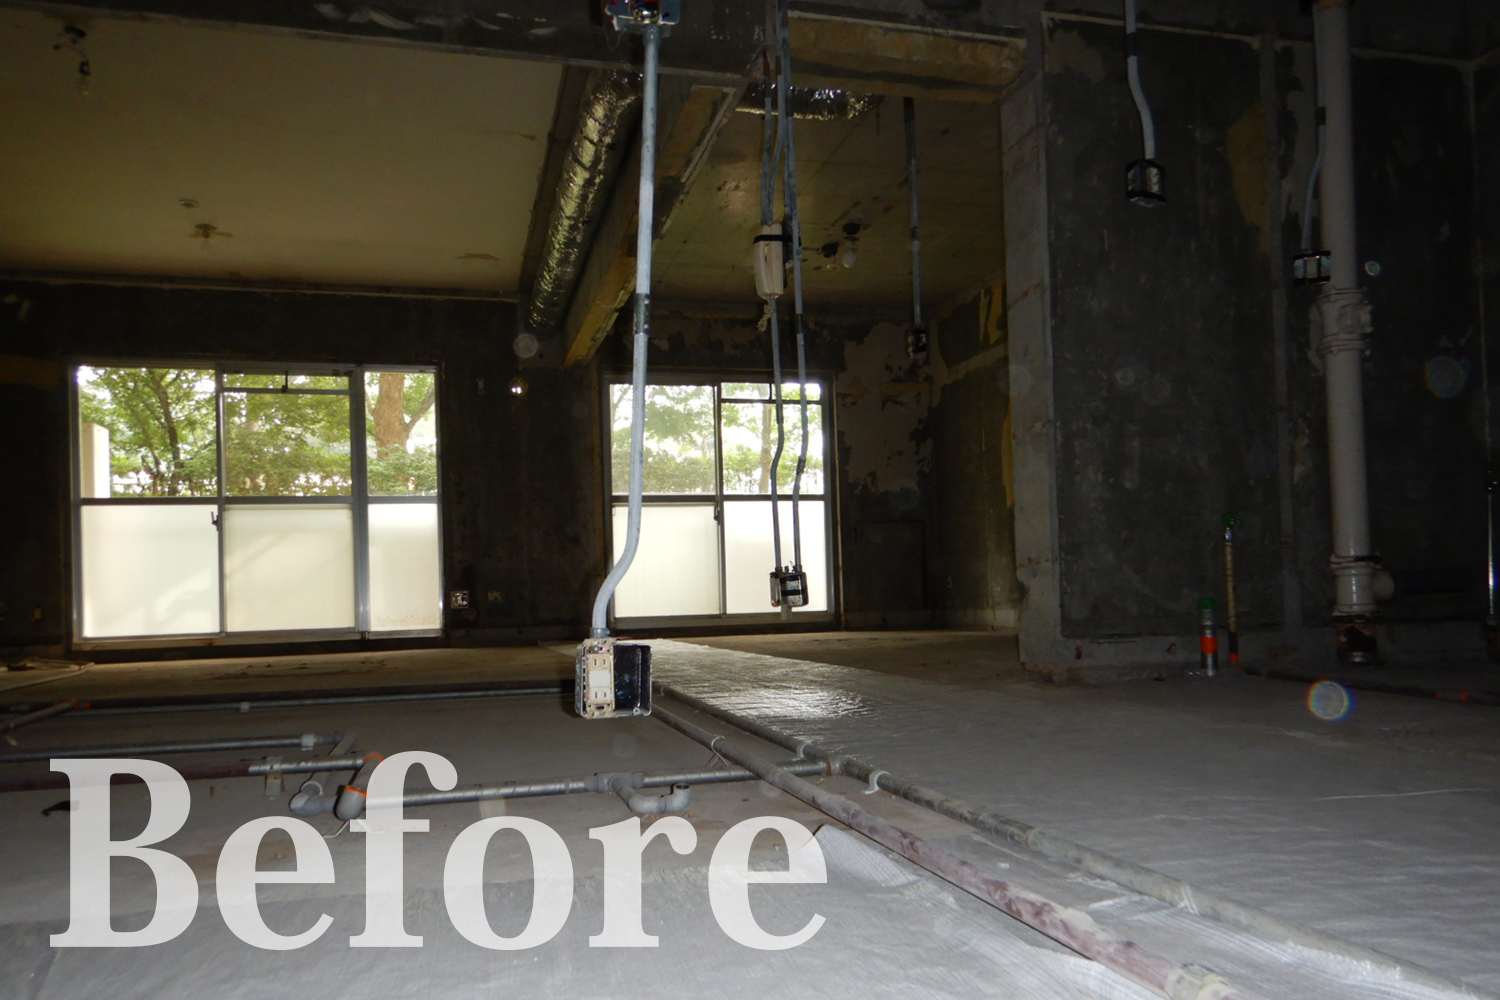 Before／スケルトン状態（既存の建物の骨組みを残し、内装や設備等全てが解体されてある状態）のマンション一室